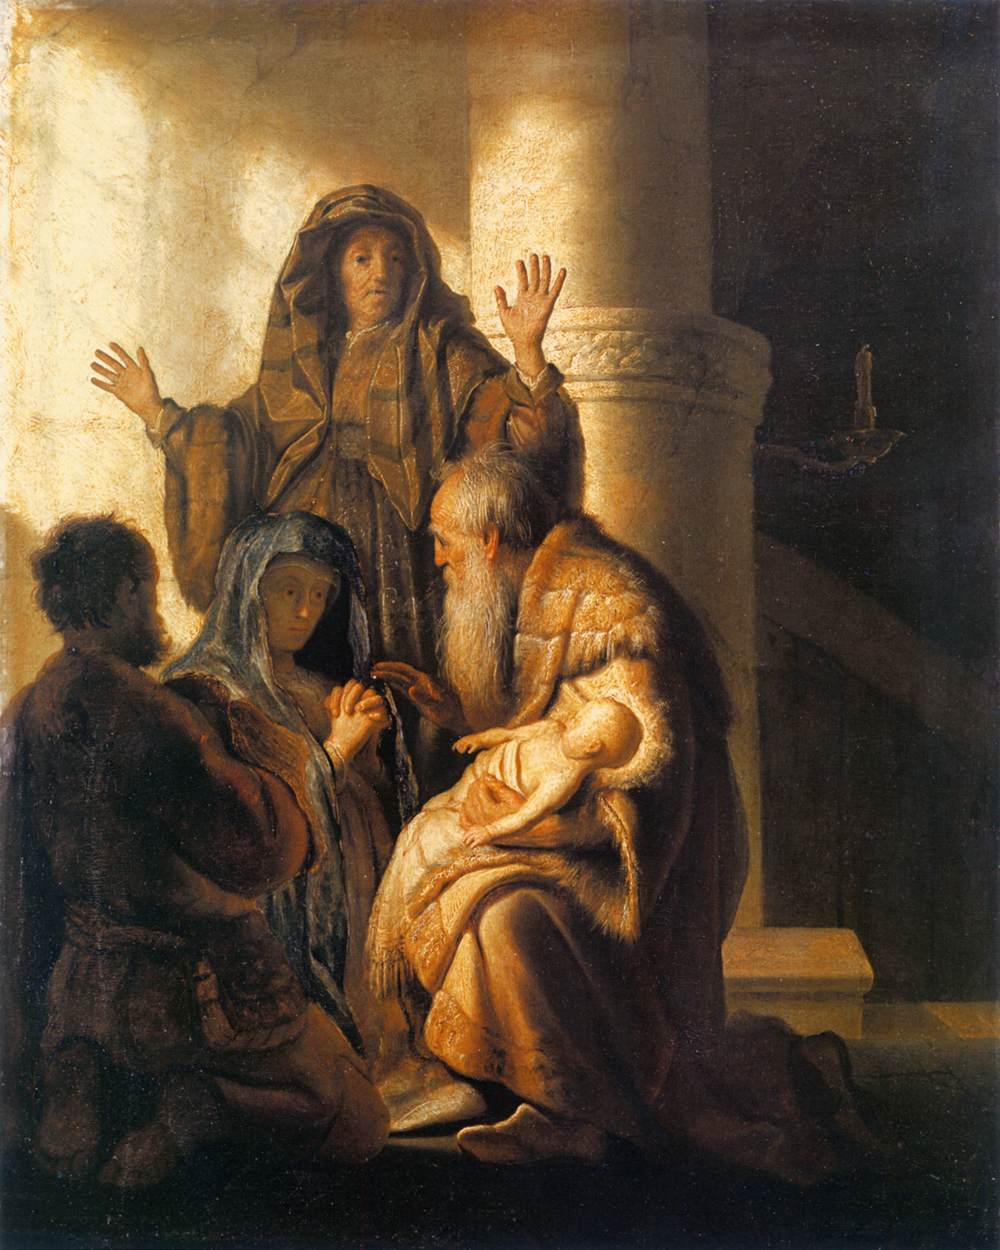 Siméon et Ana reconnaissent le Seigneur en Jésus